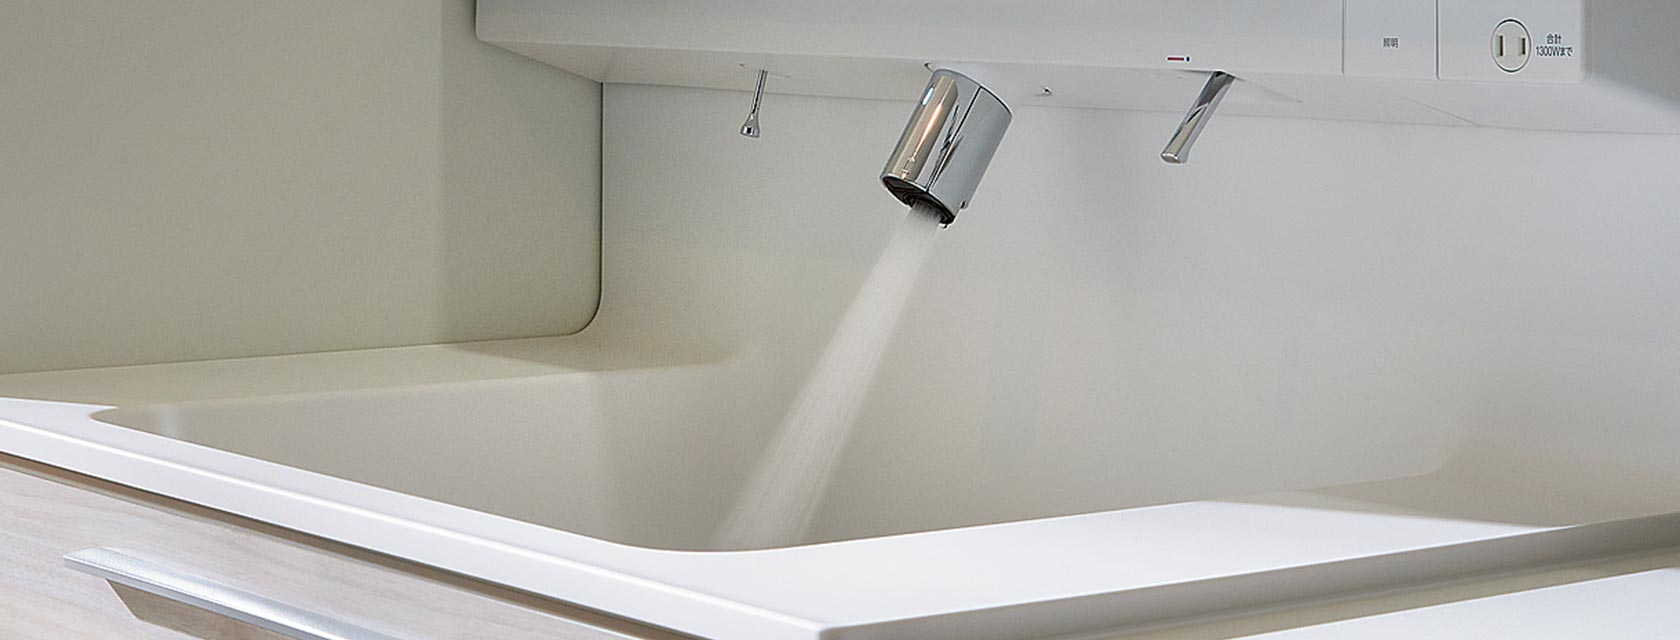 洗面台のおそうじって面倒… 鎌田トーヨー住器のブログ 写真1